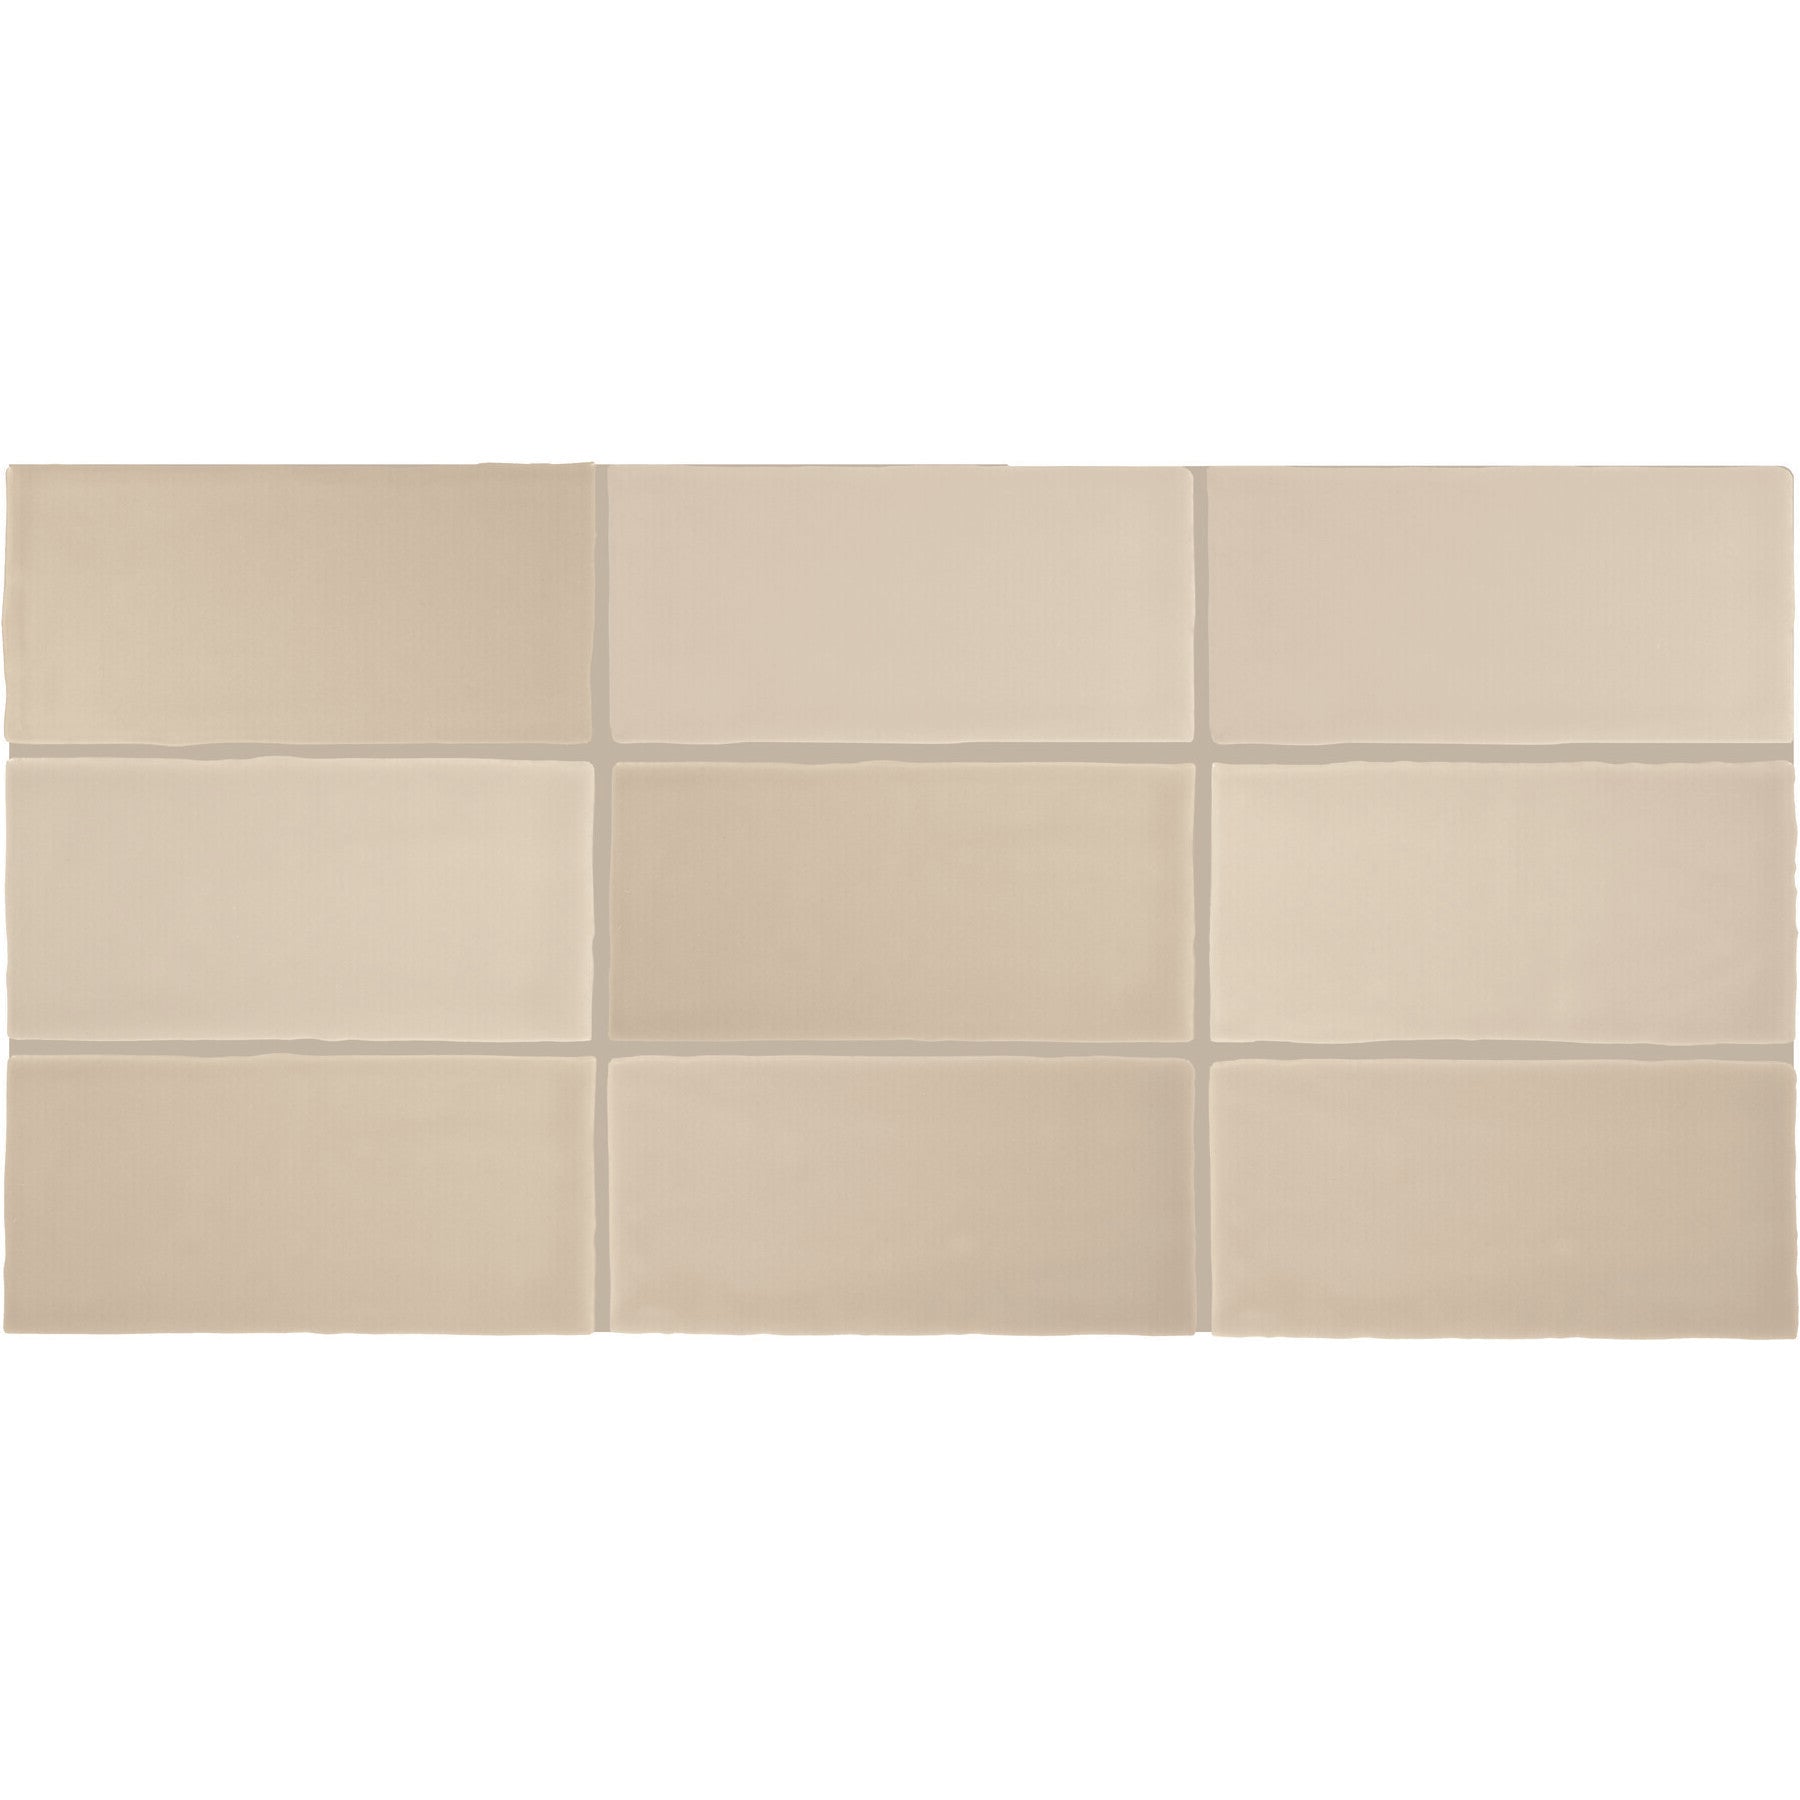 Daltile - Farrier - 2.5 in. x 5 in. Glazed Ceramic Wall Tile - Palomino